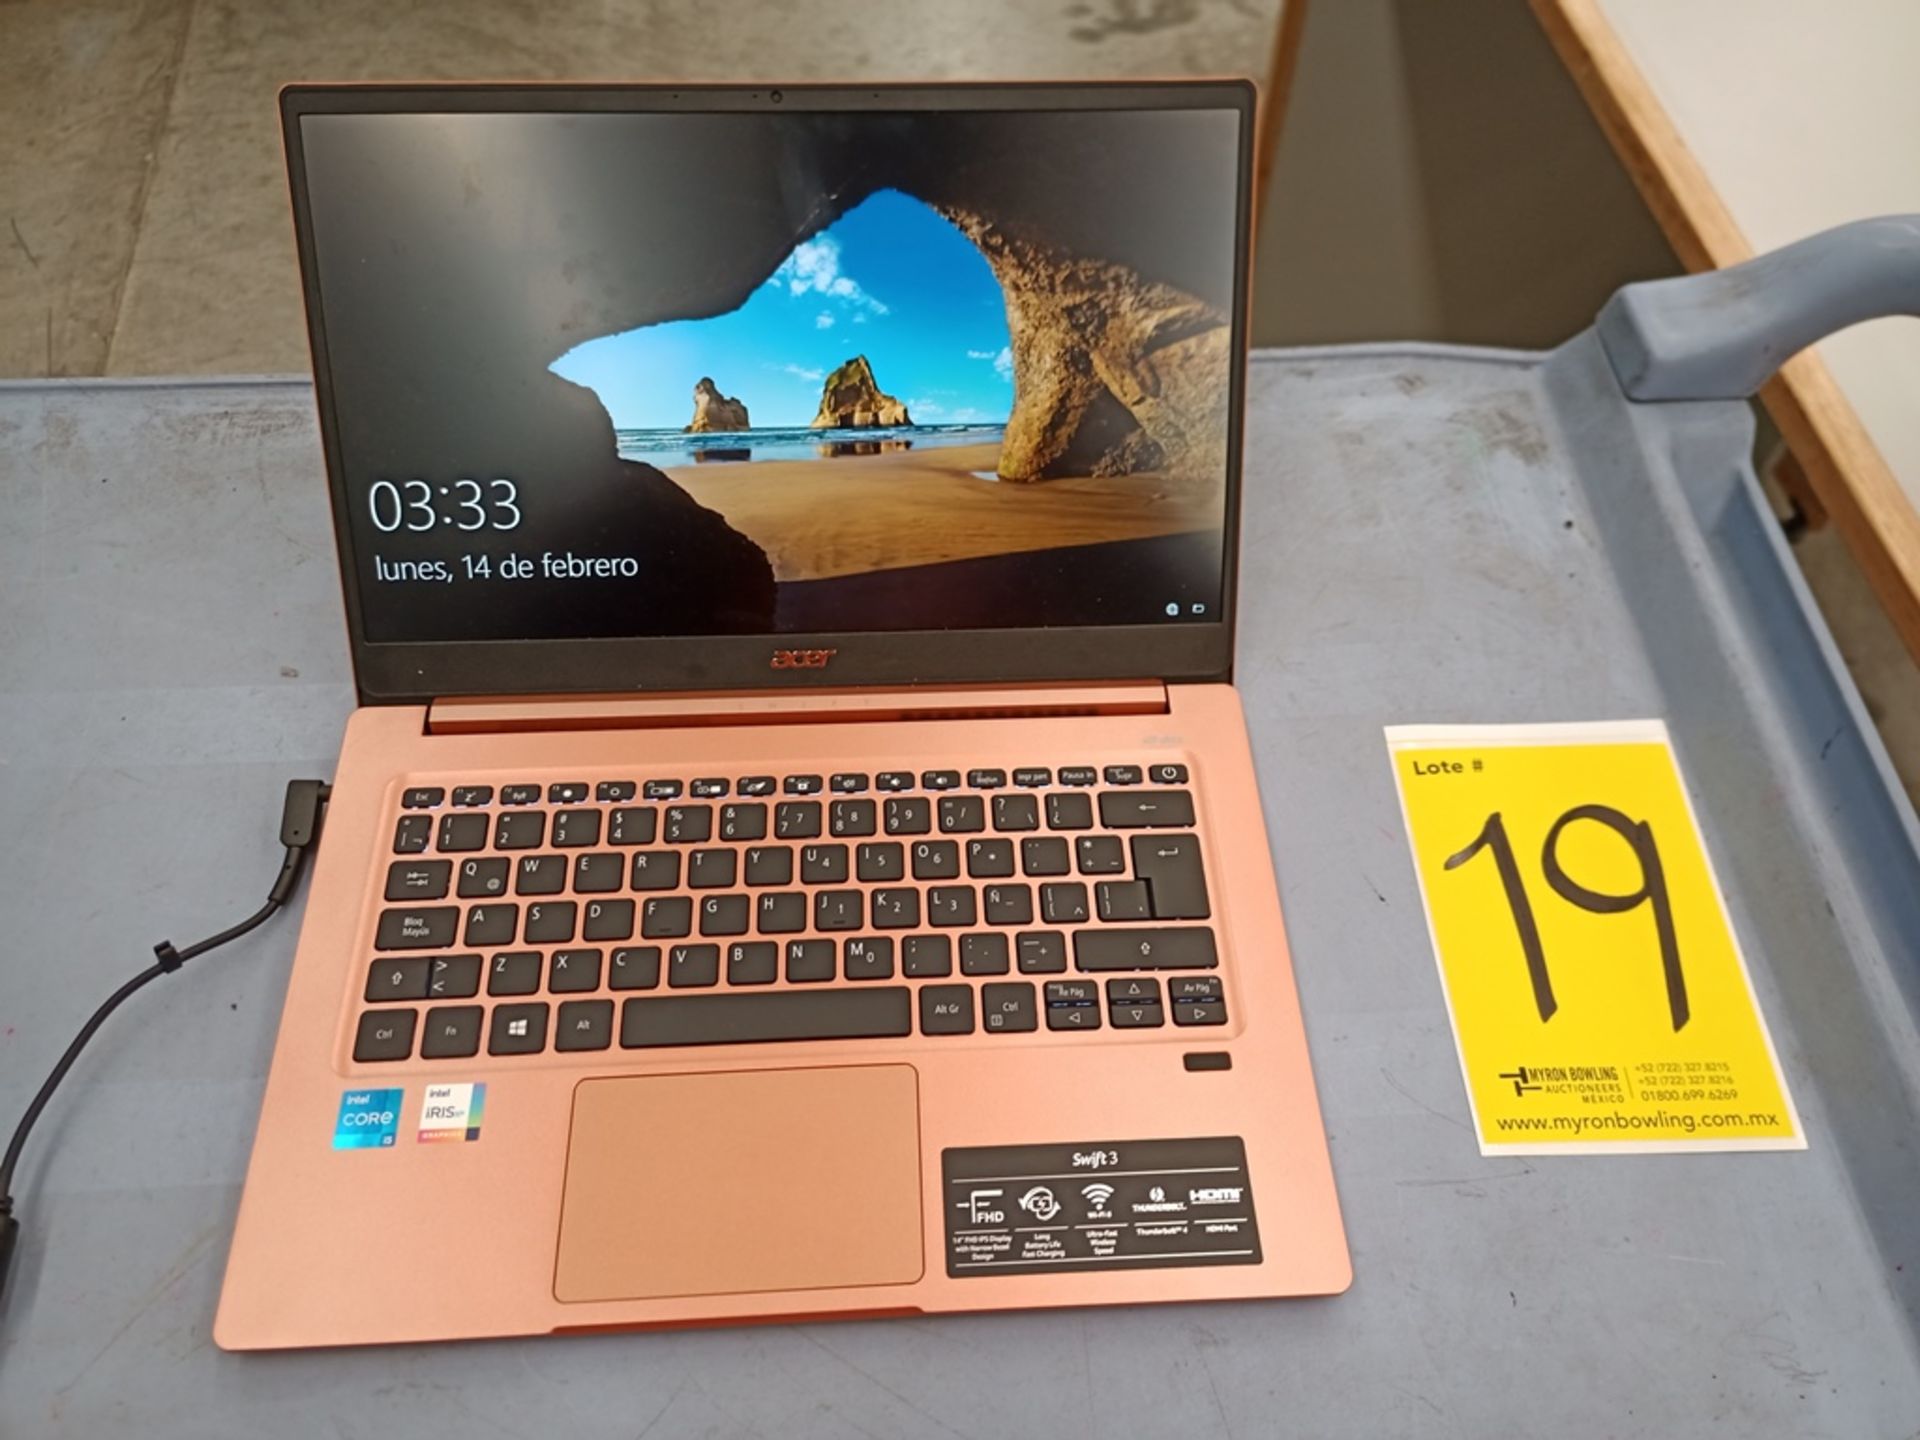 1 Computadora tipo laptop Marca ACER, Modelo SF314595959, Serie NXA0RAL001115100303400, Color Melon - Image 3 of 21